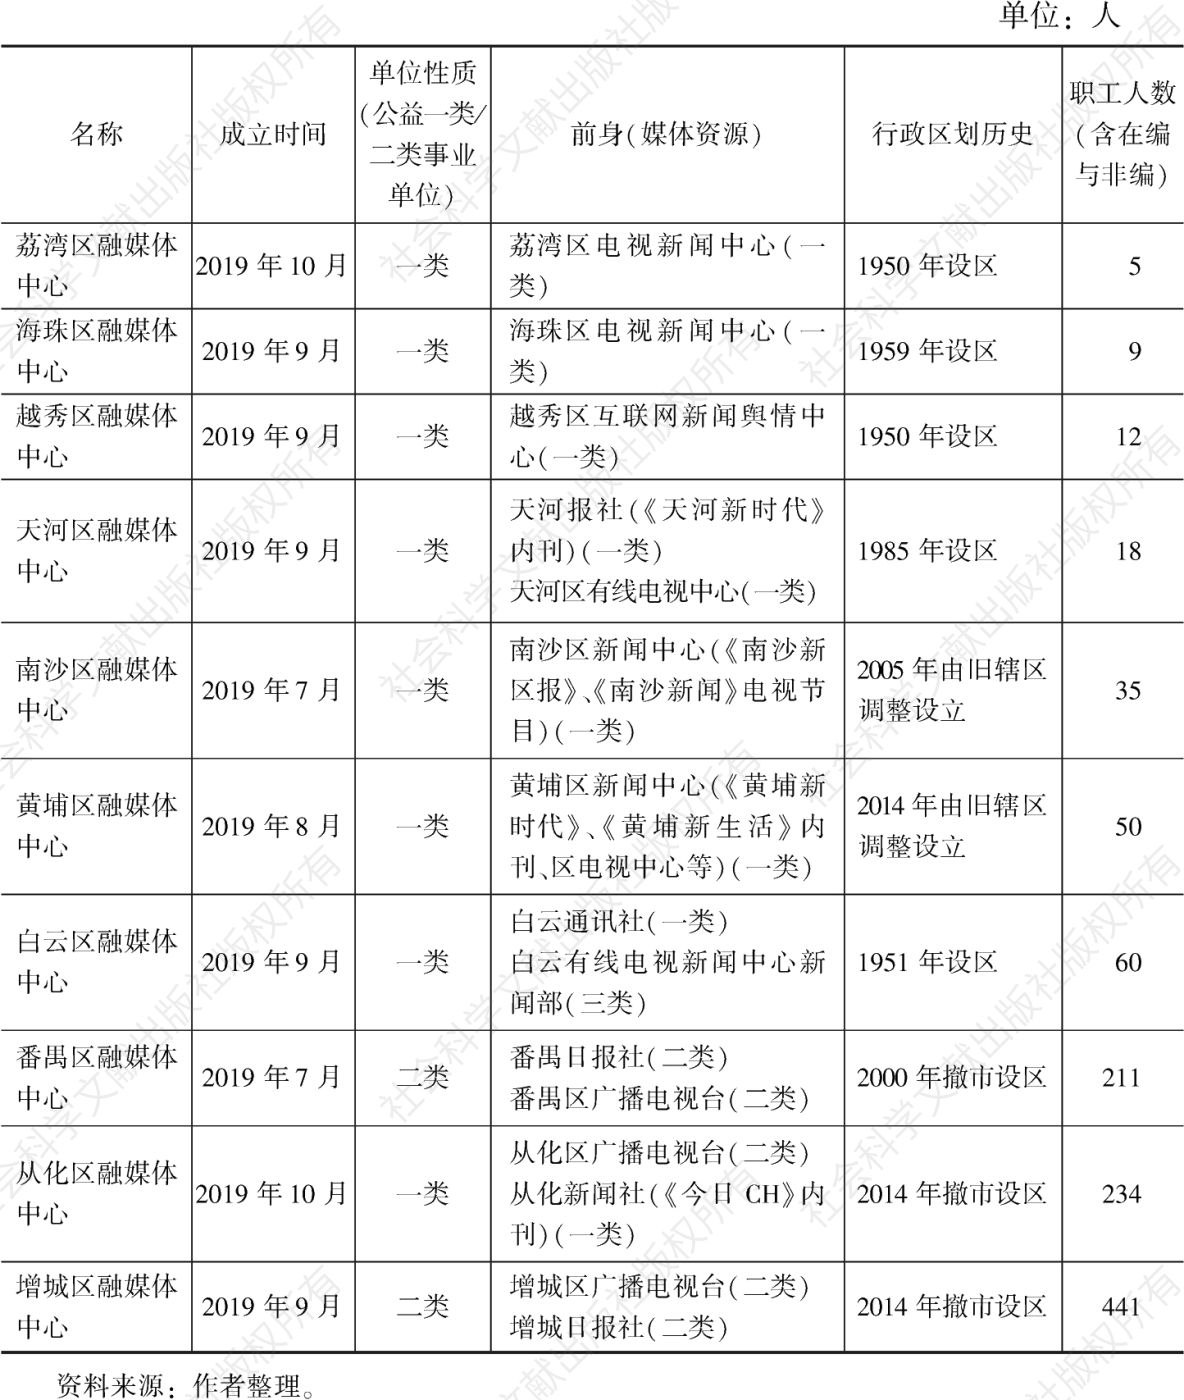 表1 广州10区融媒体中心组建情况